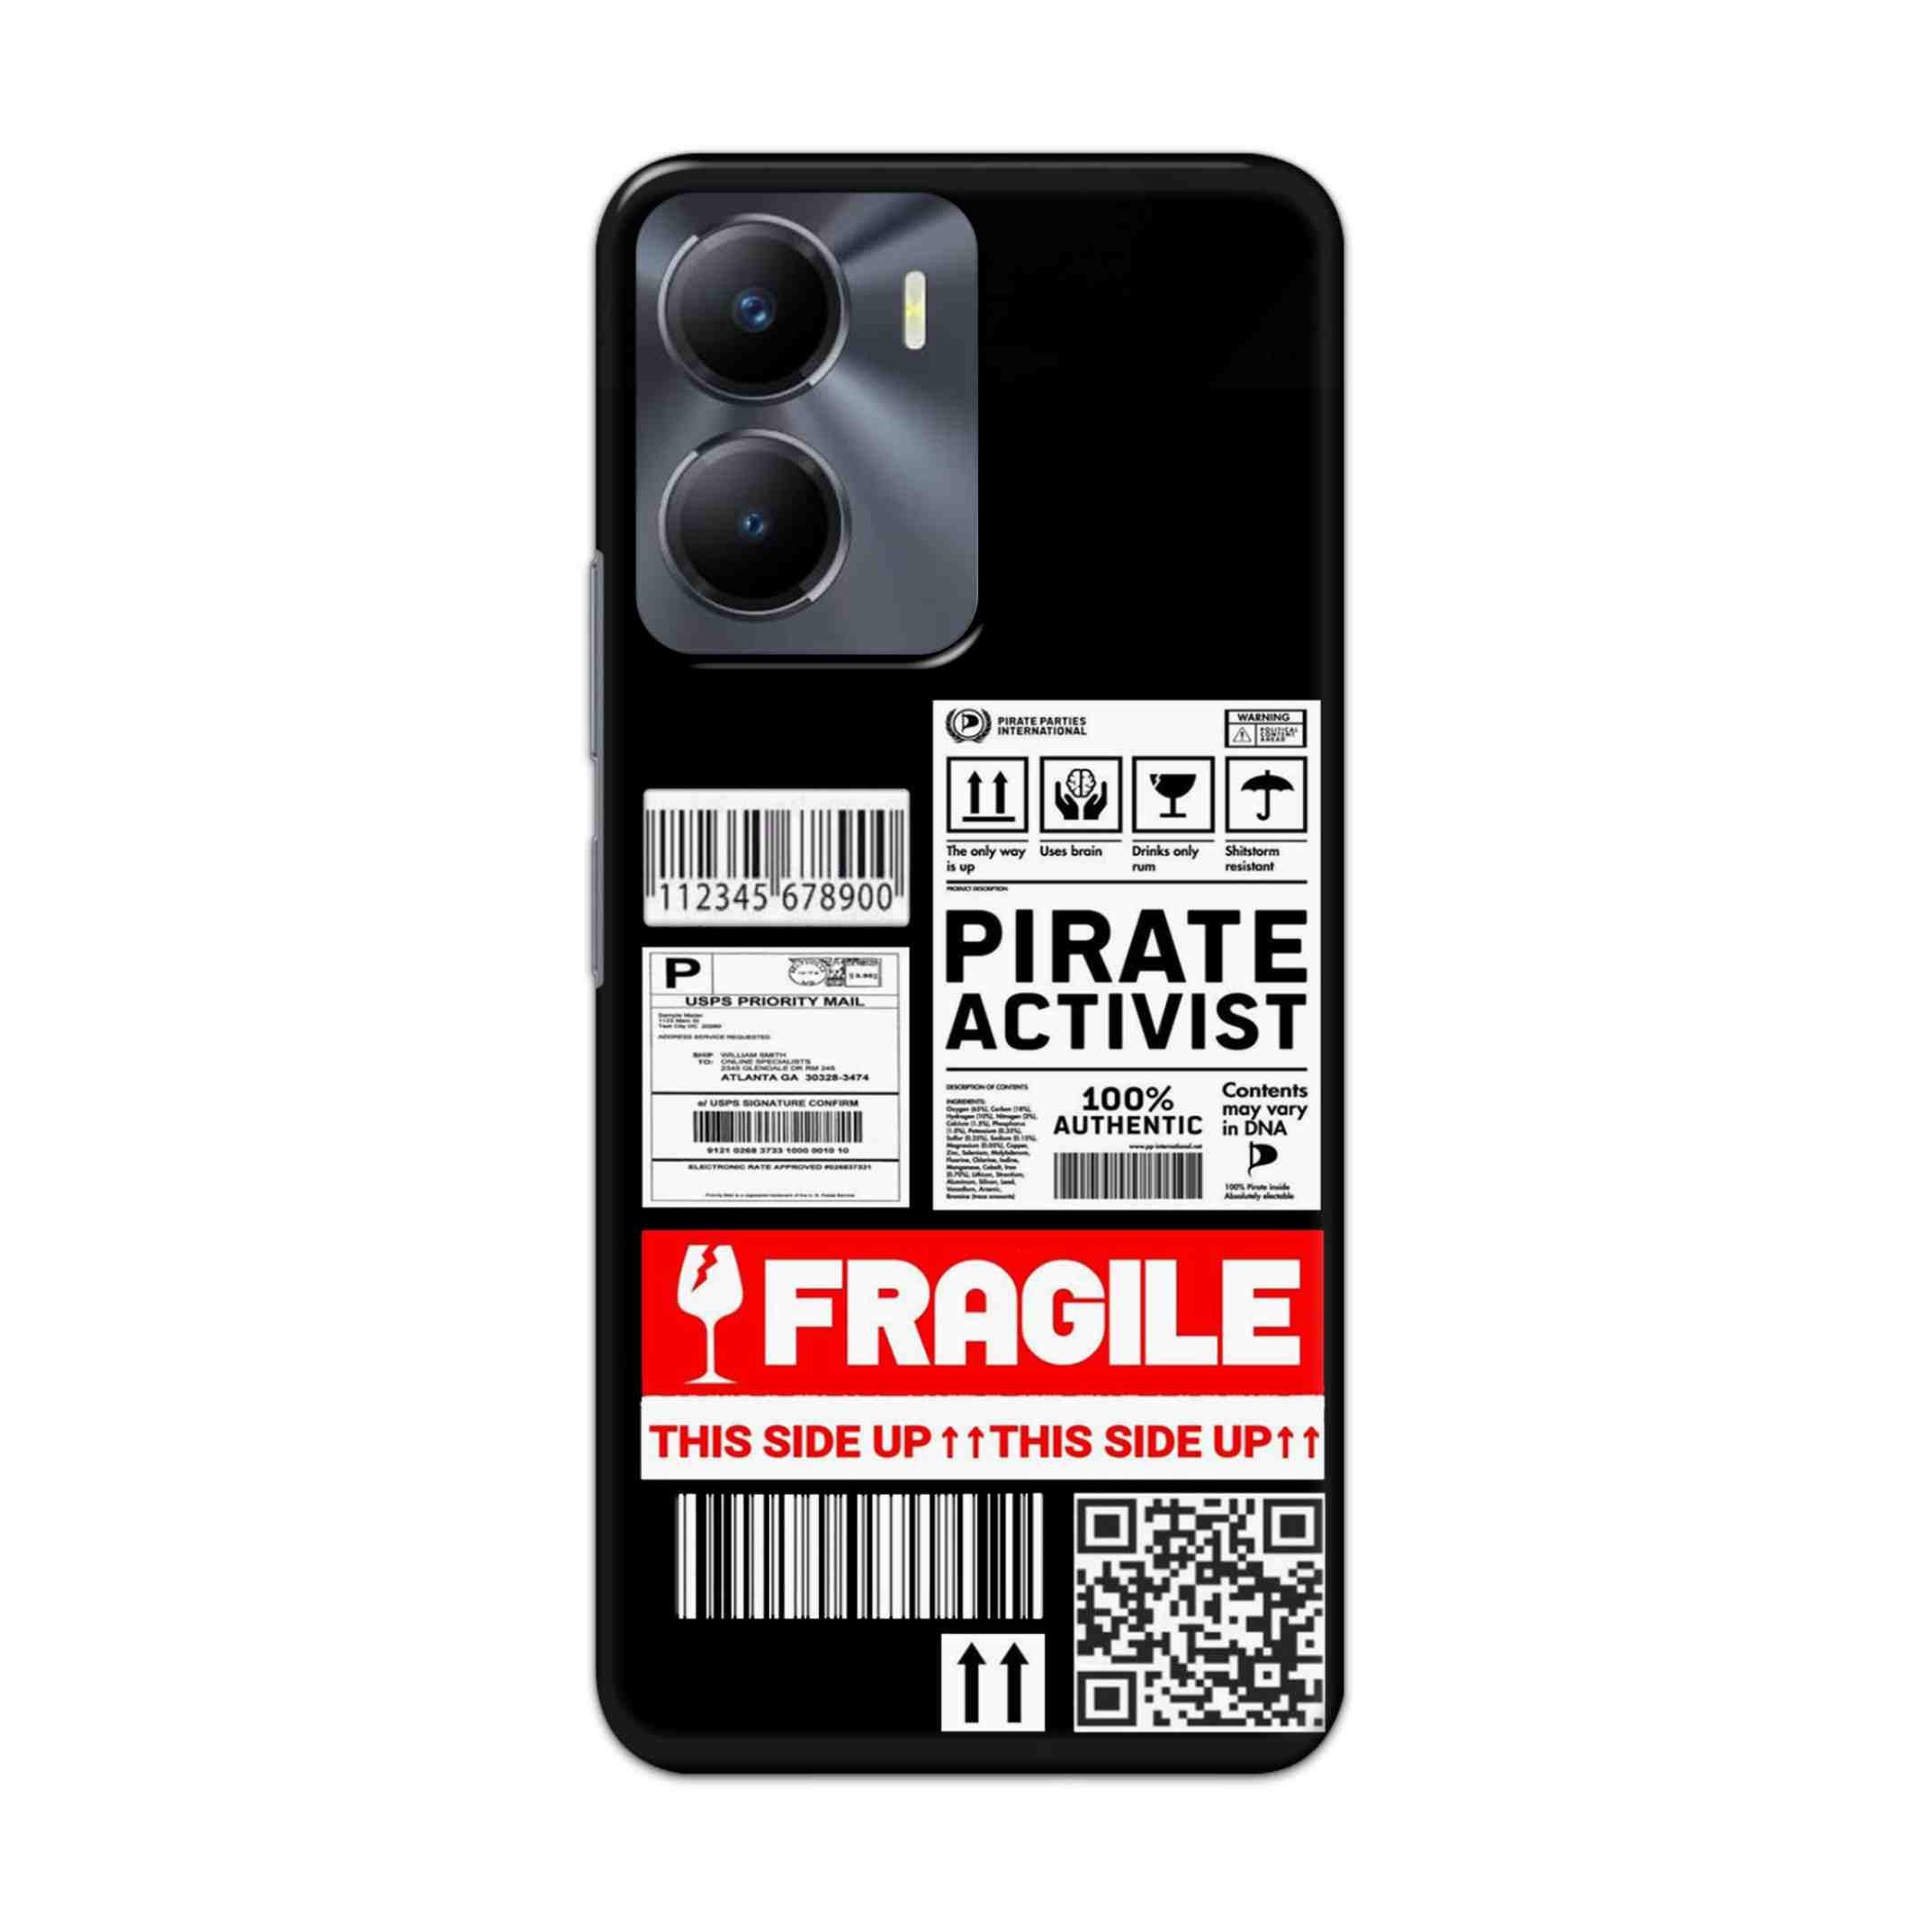 Buy Fragile Hard Back Mobile Phone Case Cover For Vivo Y56 Online